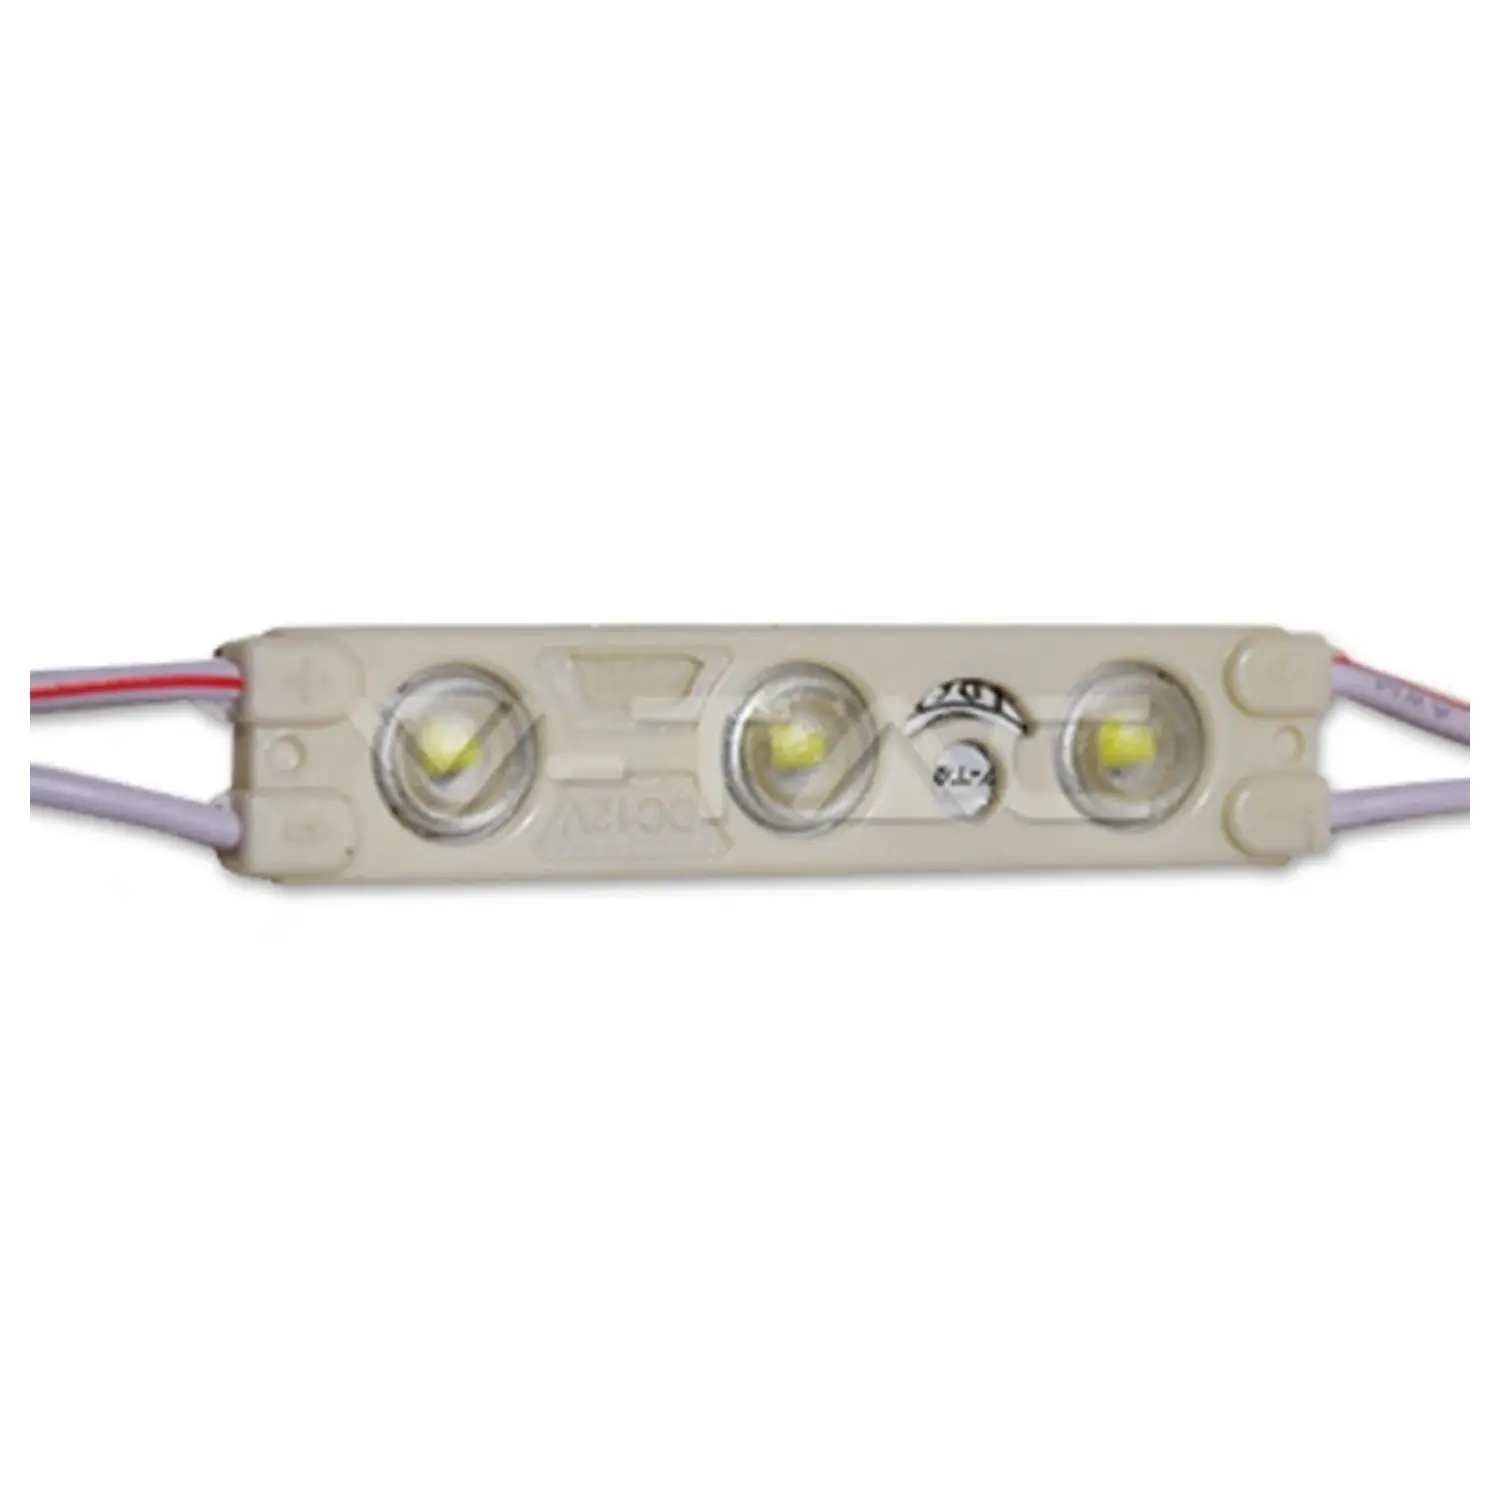 immagine del prodotto modulo led 12 volt per insegne tabelle luminose striscia led 1 watt bianco freddo